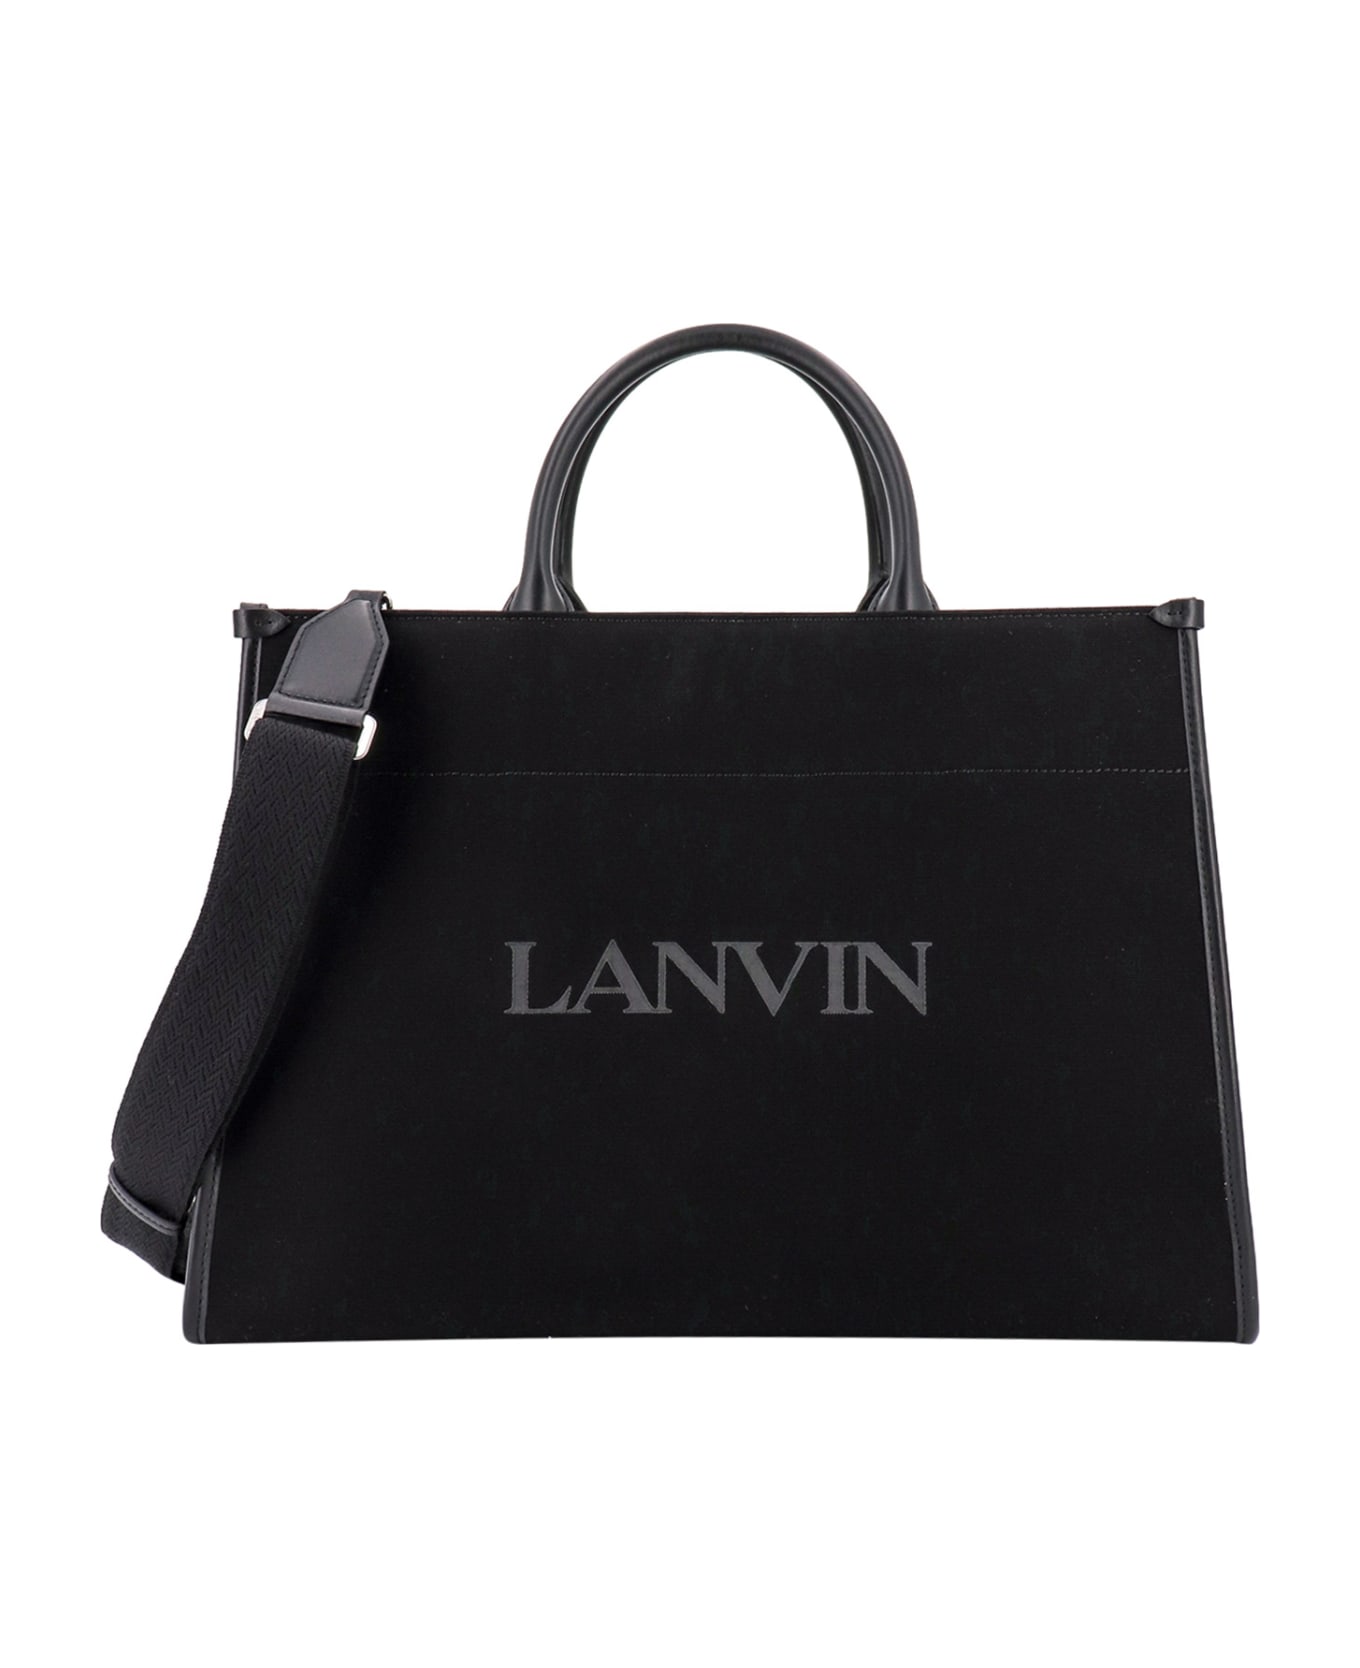 Lanvin Handbag - Black